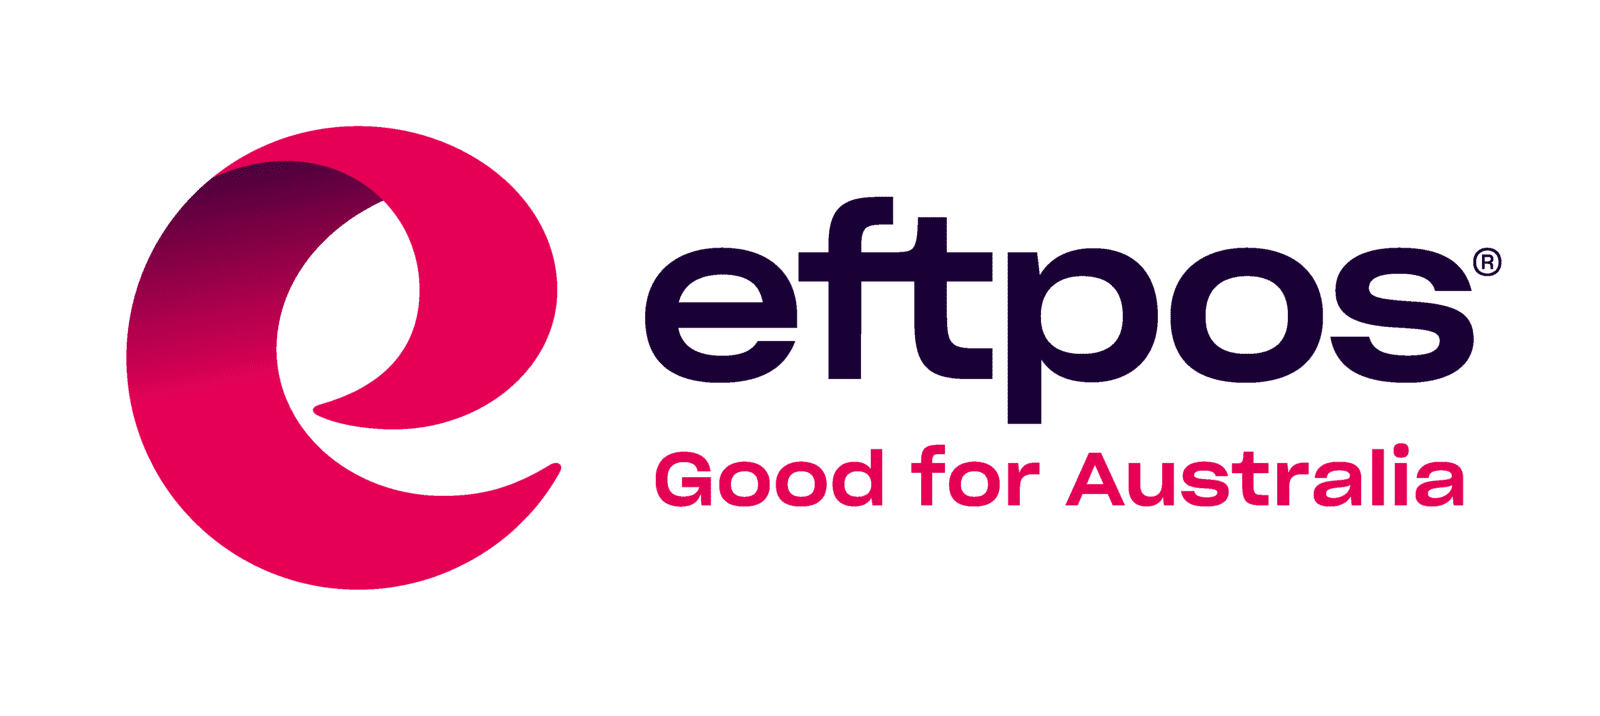 EFTPOS scheme logo